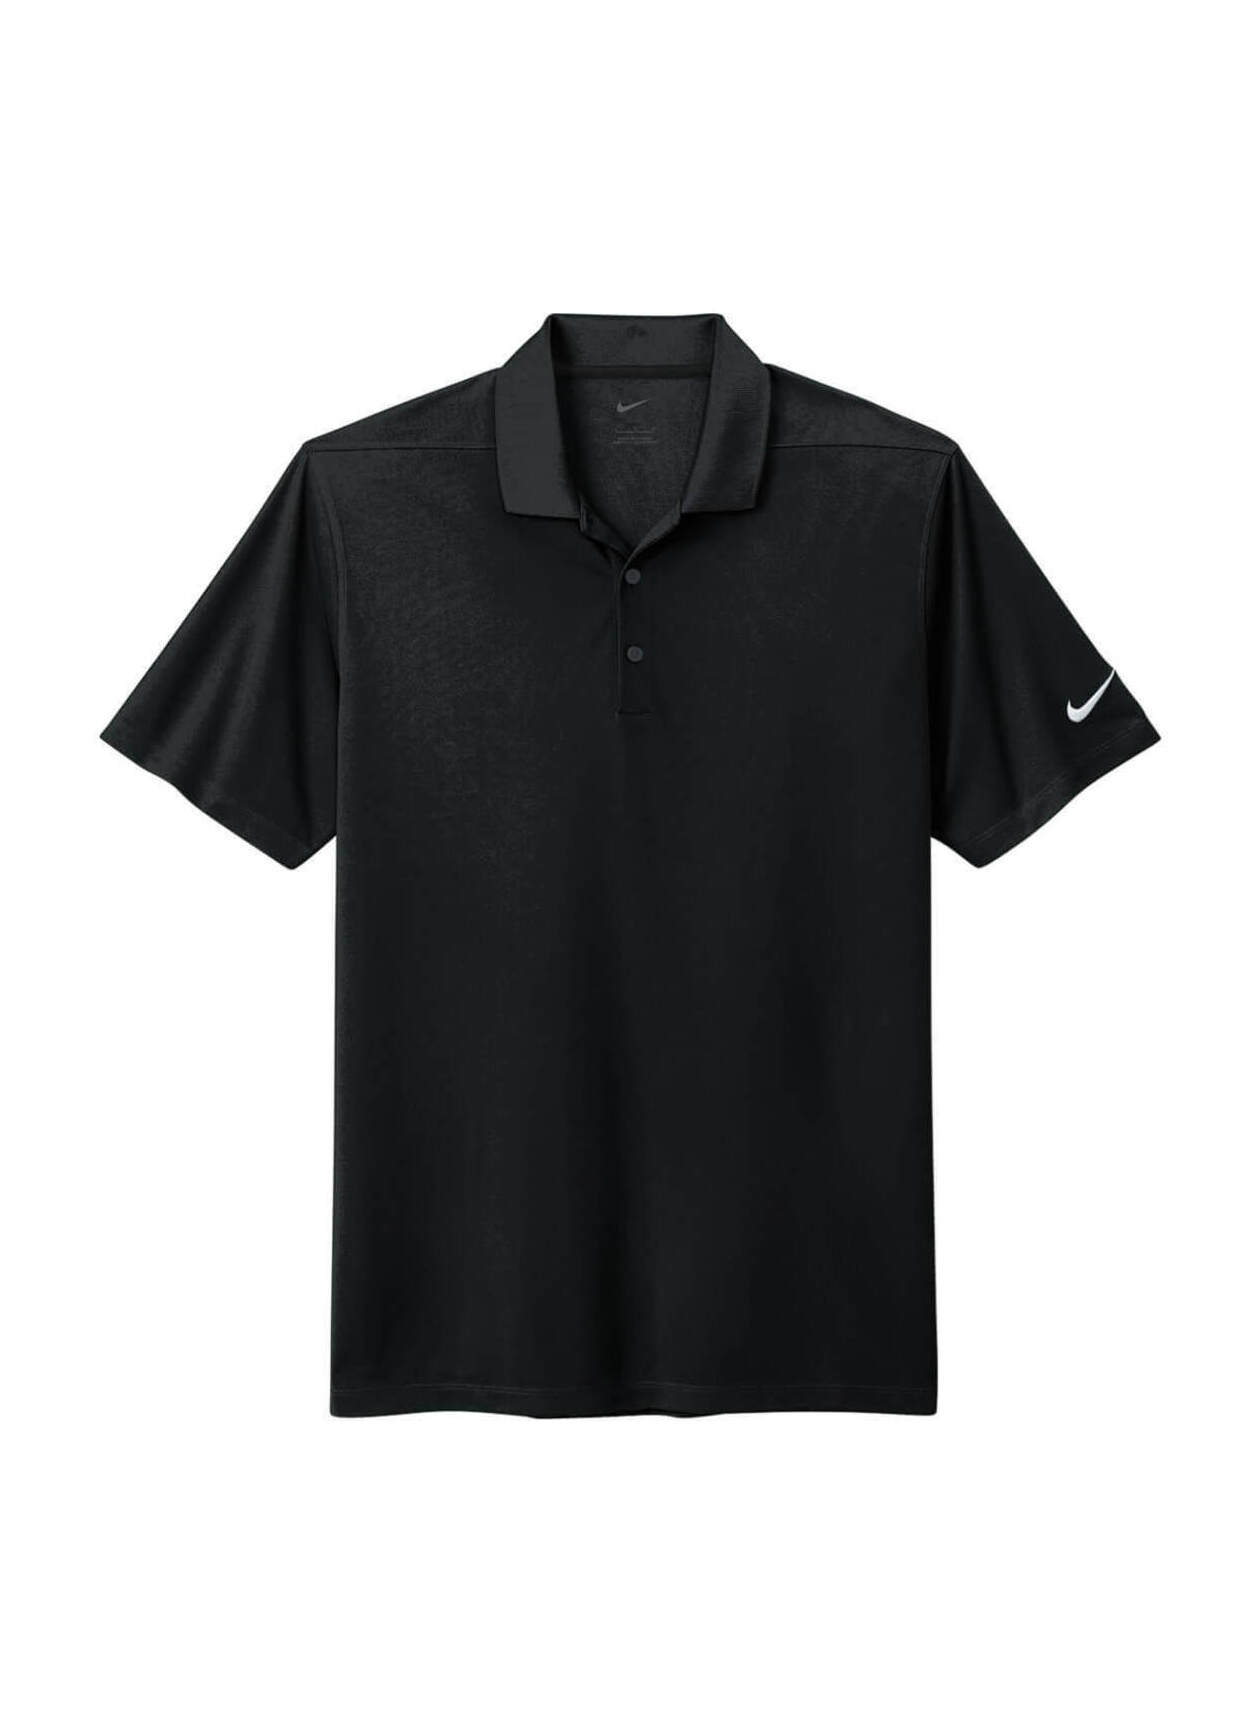 Embroidered Nike Men's Black Dri-FIT Micro Pique 2.0 Polo | Custom Polo